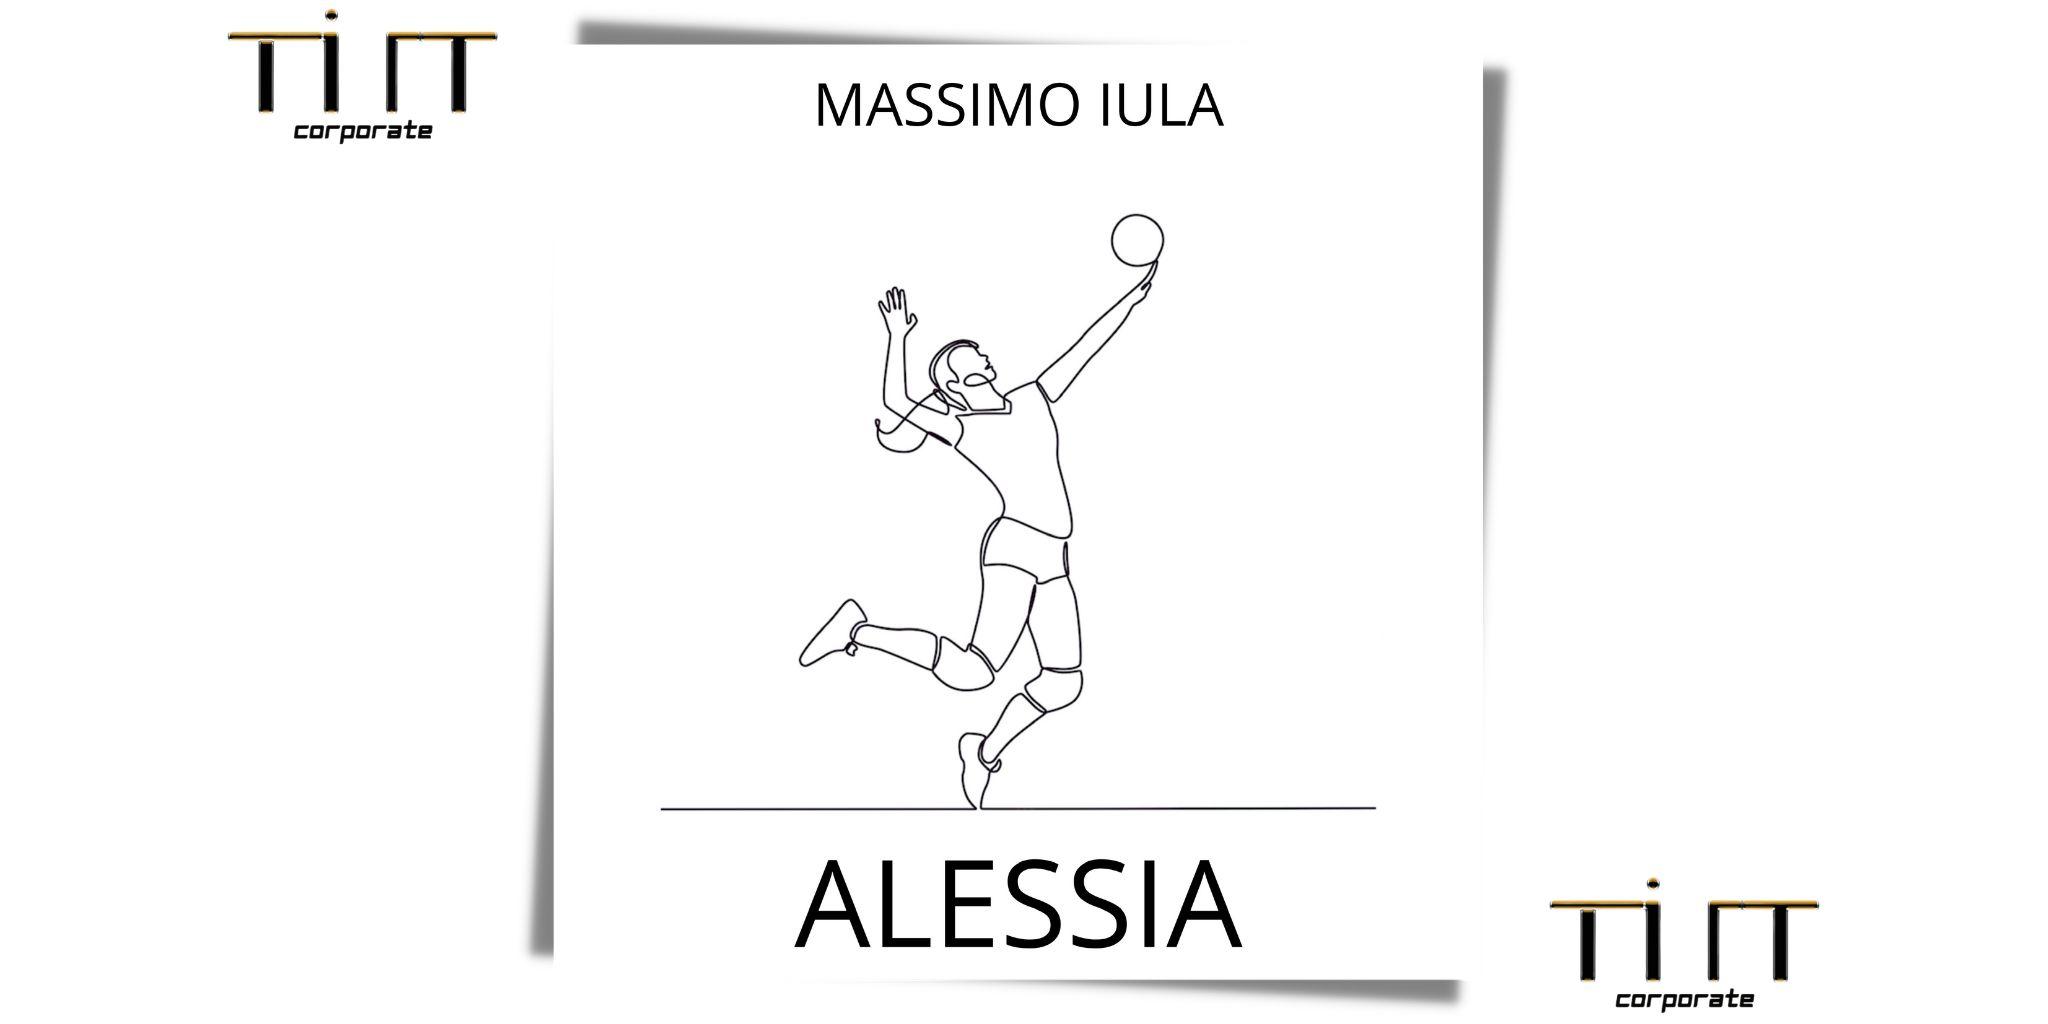 ALESSIA è il nuovo singolo di MASSIMO IULA!!!